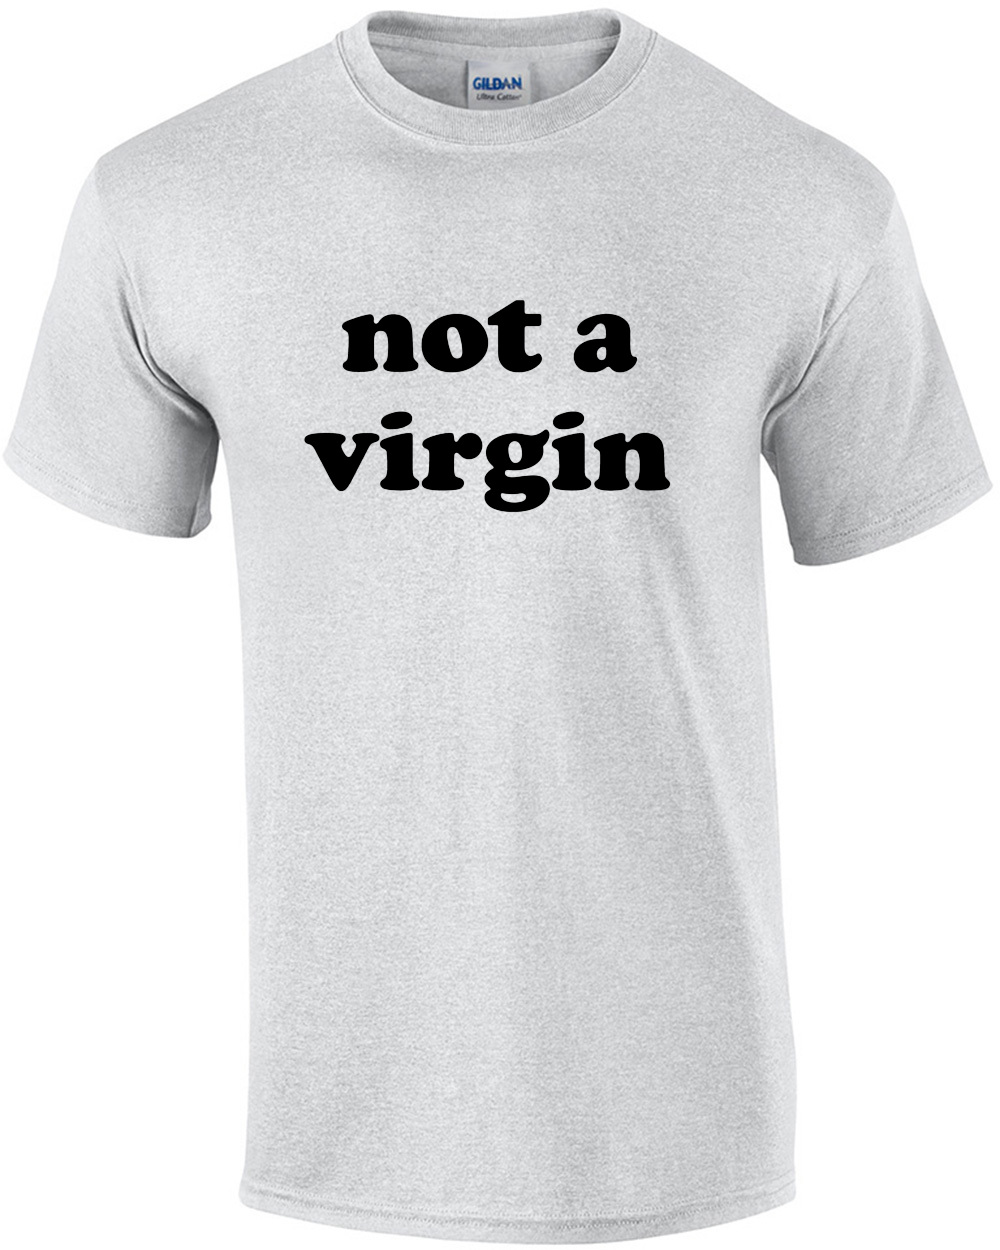 Not a Virgin - Funny T-Shirt